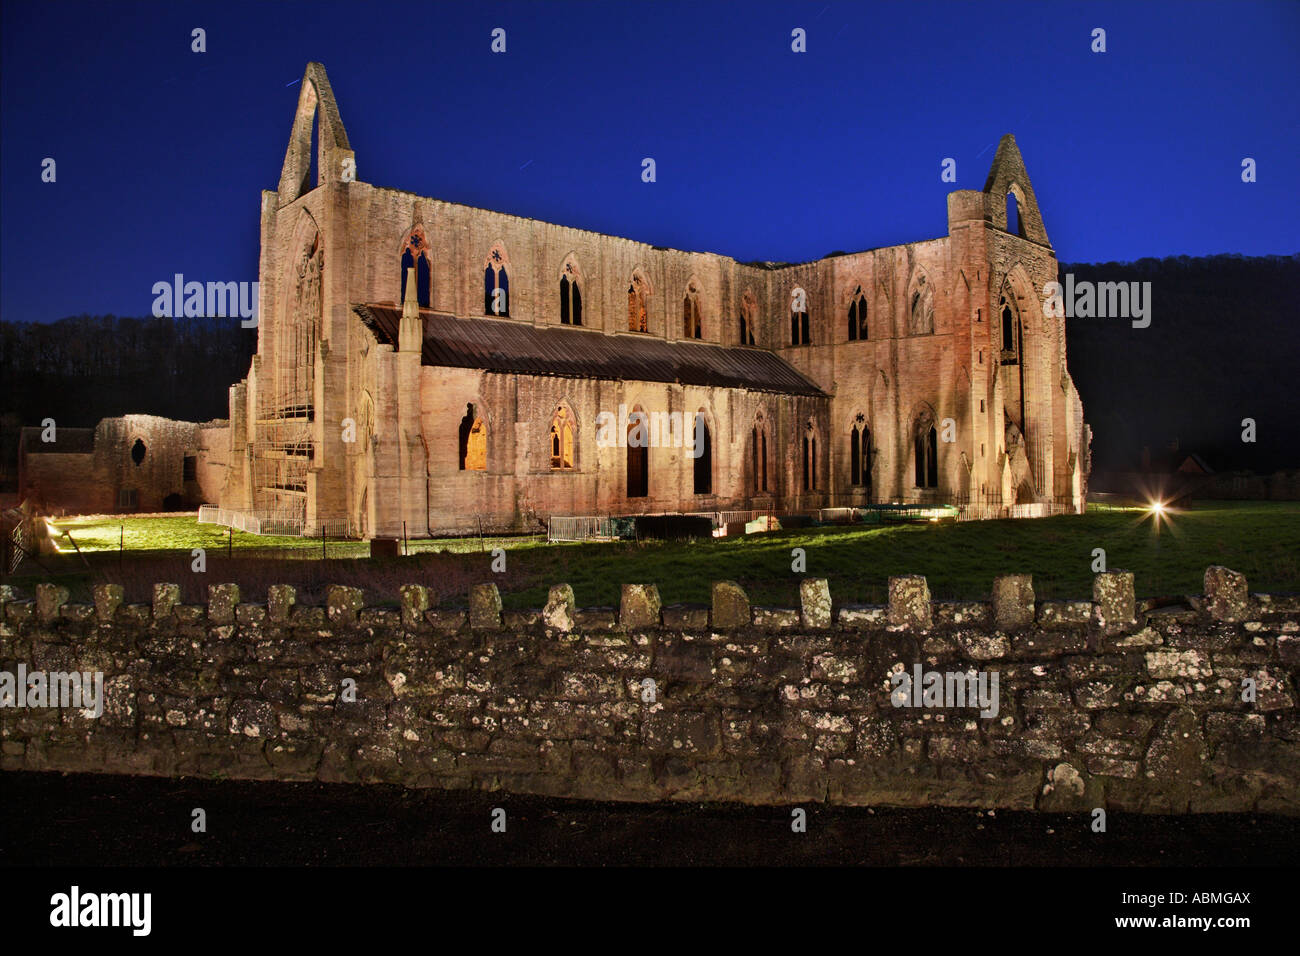 Orizzontale, foto a colori di Tintern Abbey nella valle del Wye, Monmouthshire, Galles del Sud. Regno Unito Foto Stock